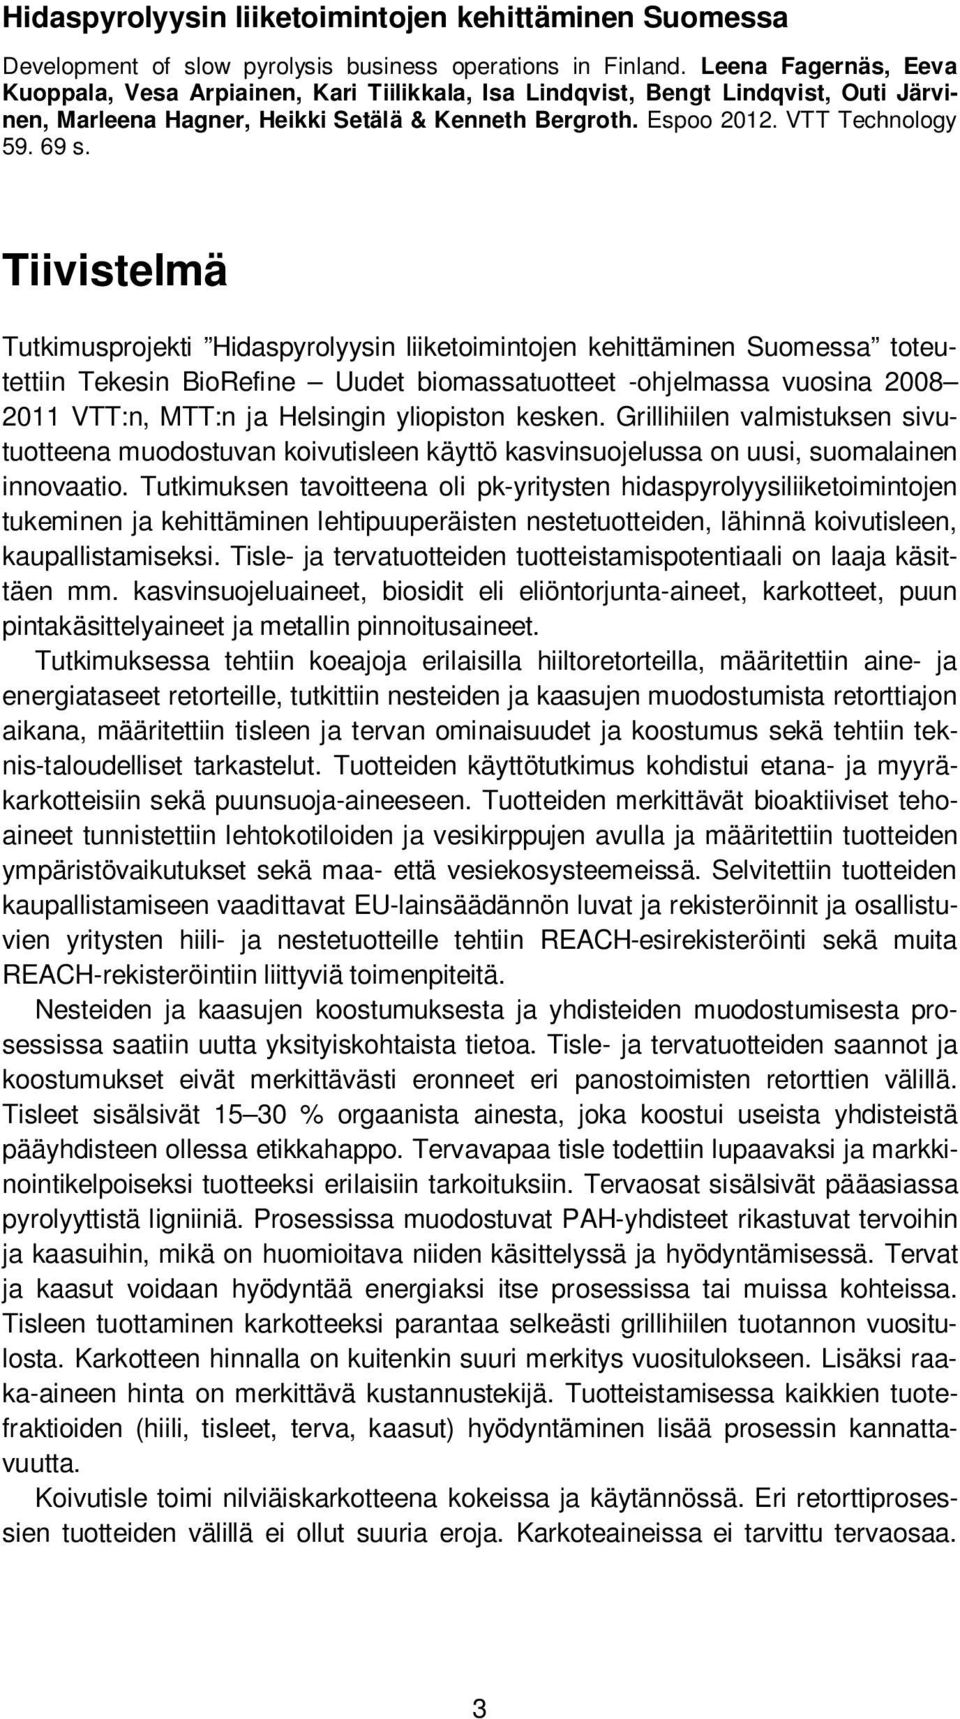 Tiivistelmä Tutkimusprojekti Hidaspyrolyysin liiketoimintojen kehittäminen Suomessa toteutettiin Tekesin BioRefine Uudet biomassatuotteet -ohjelmassa vuosina 2008 2011 VTT:n, MTT:n ja Helsingin